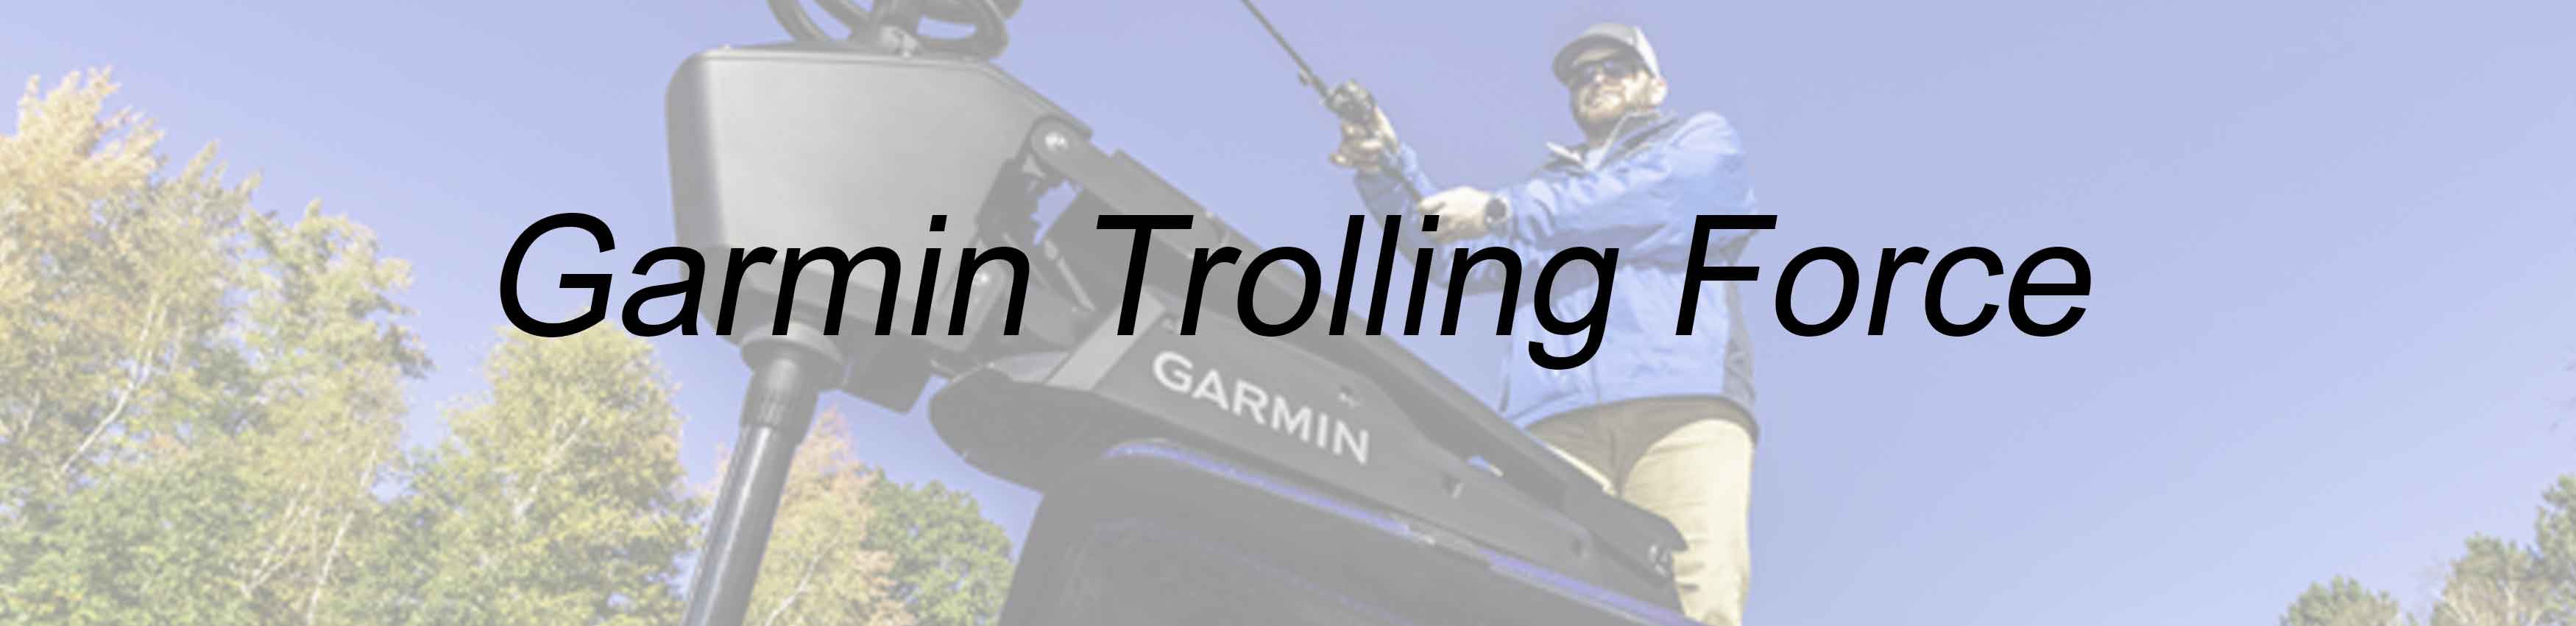 Garmin Trolling Motor